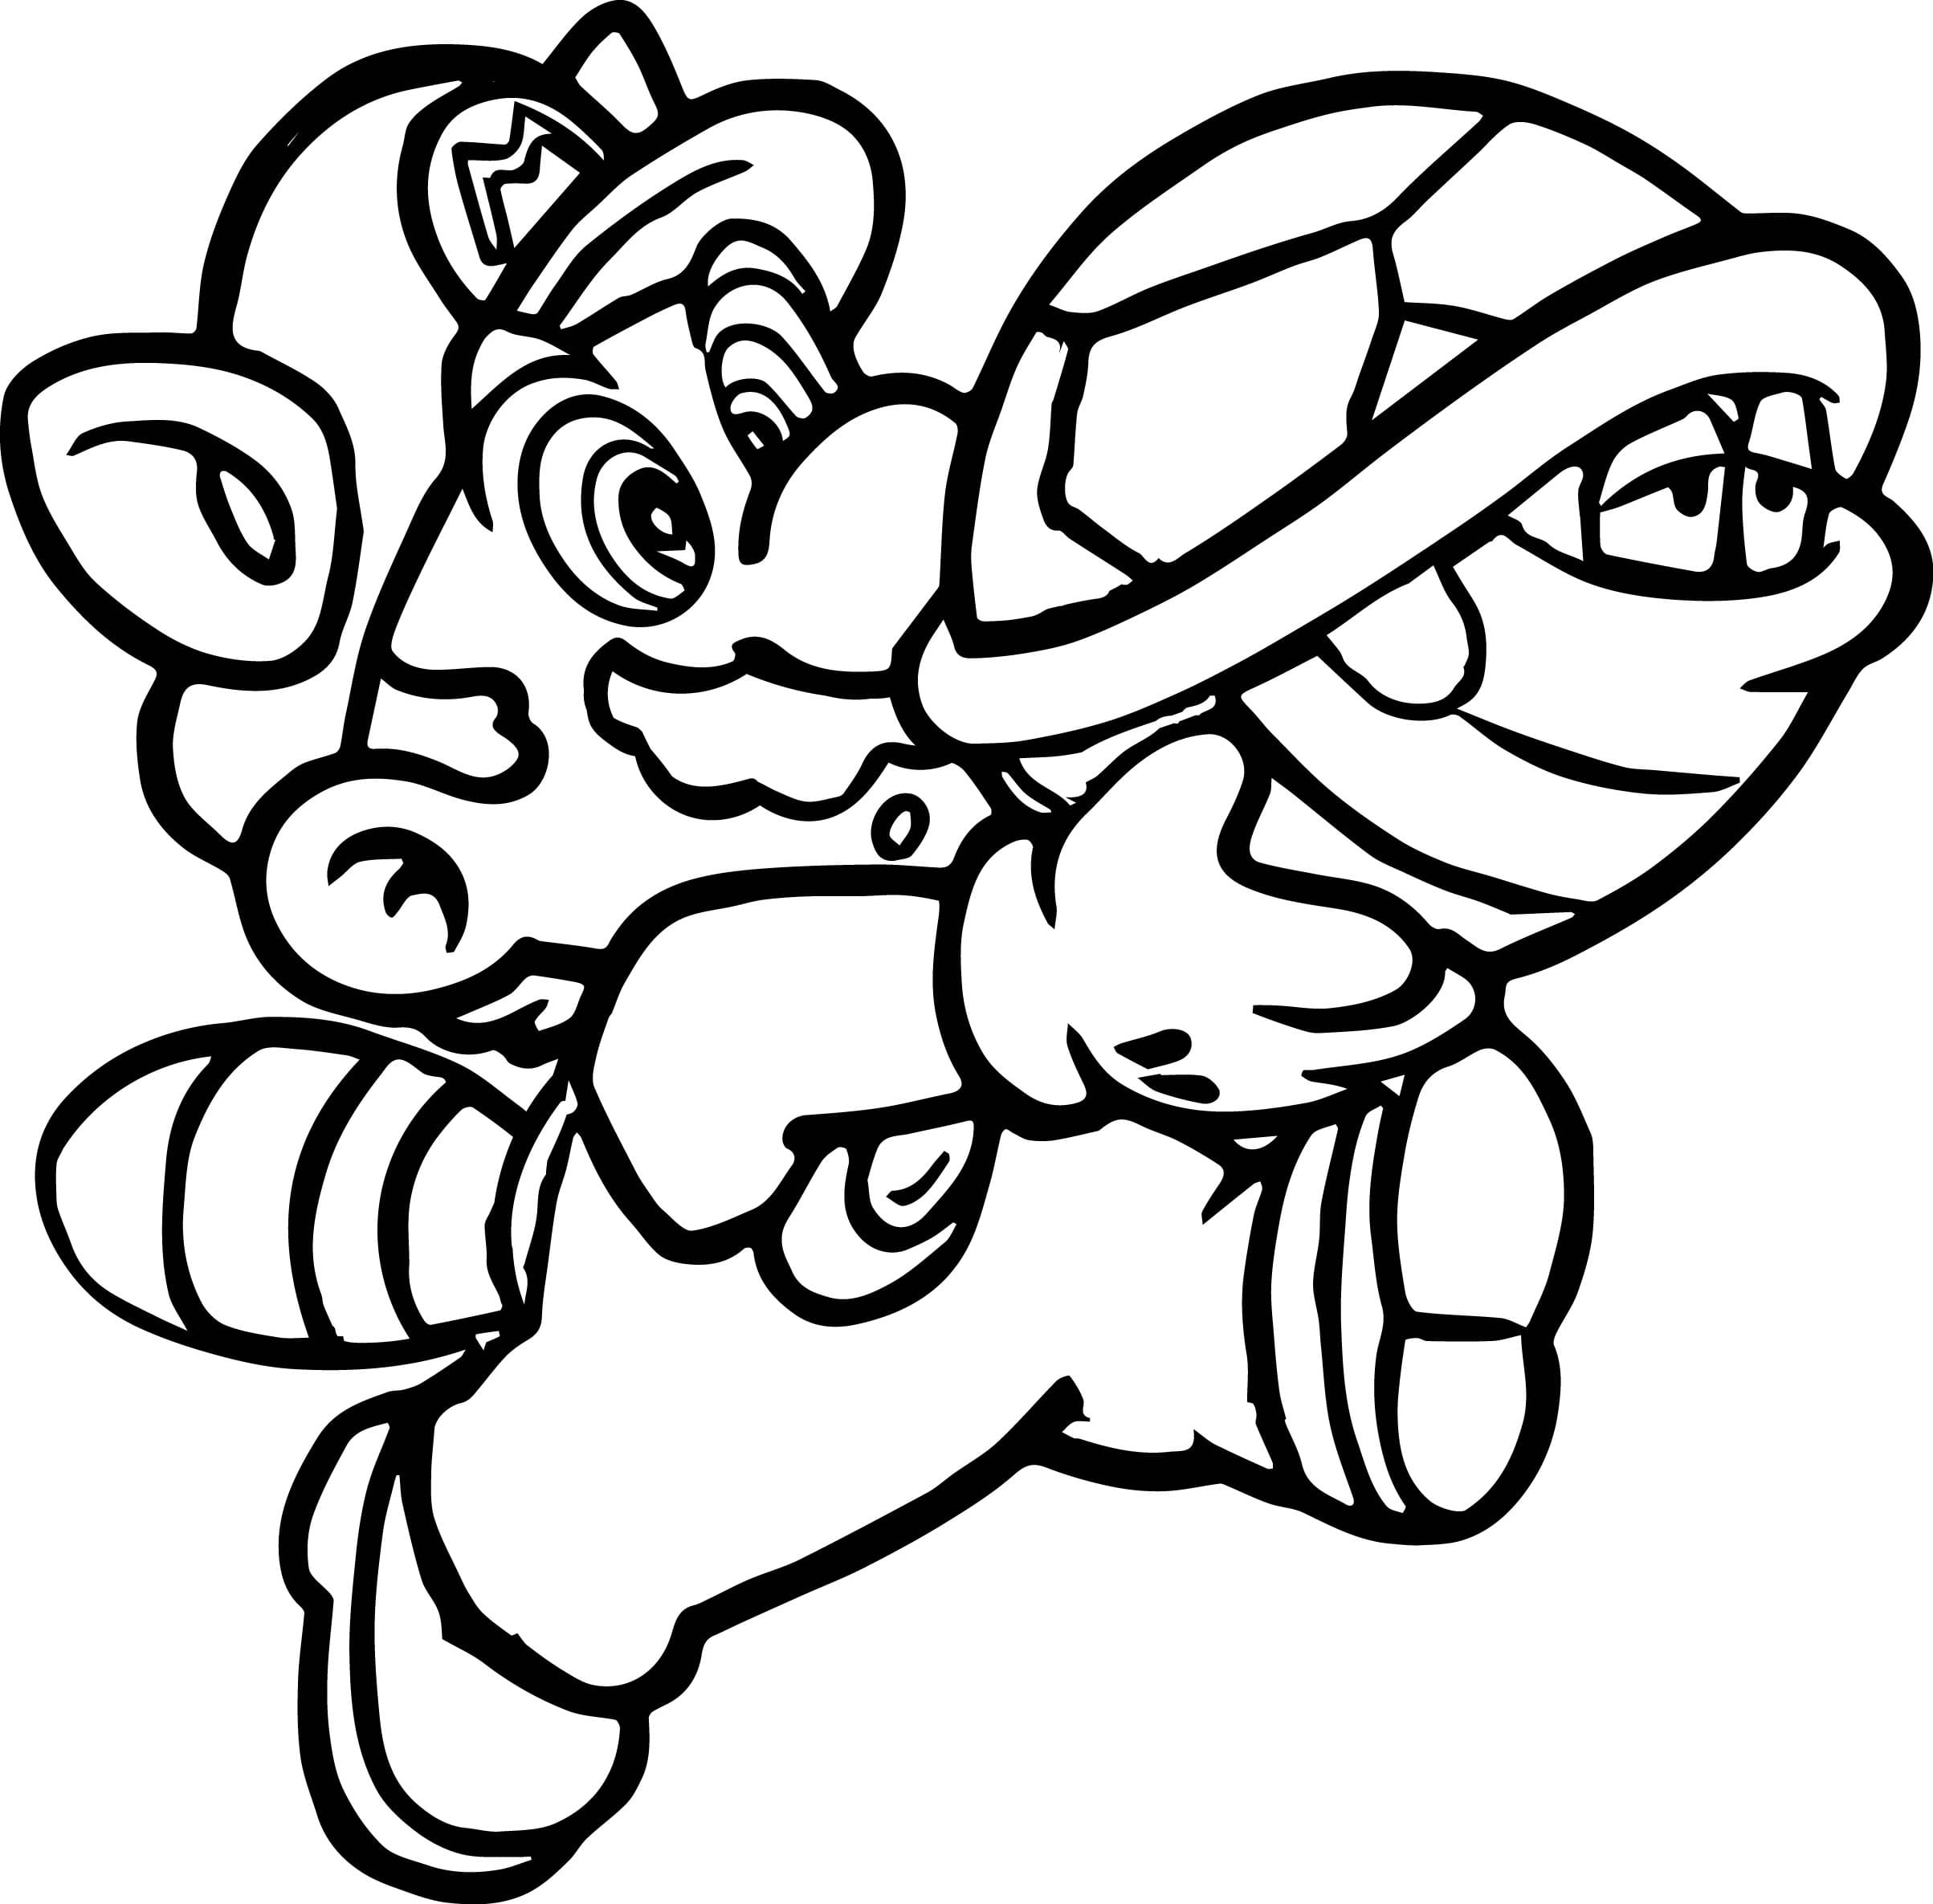 Disegni Da Colorare Super Mario Bross - IMAGESEE